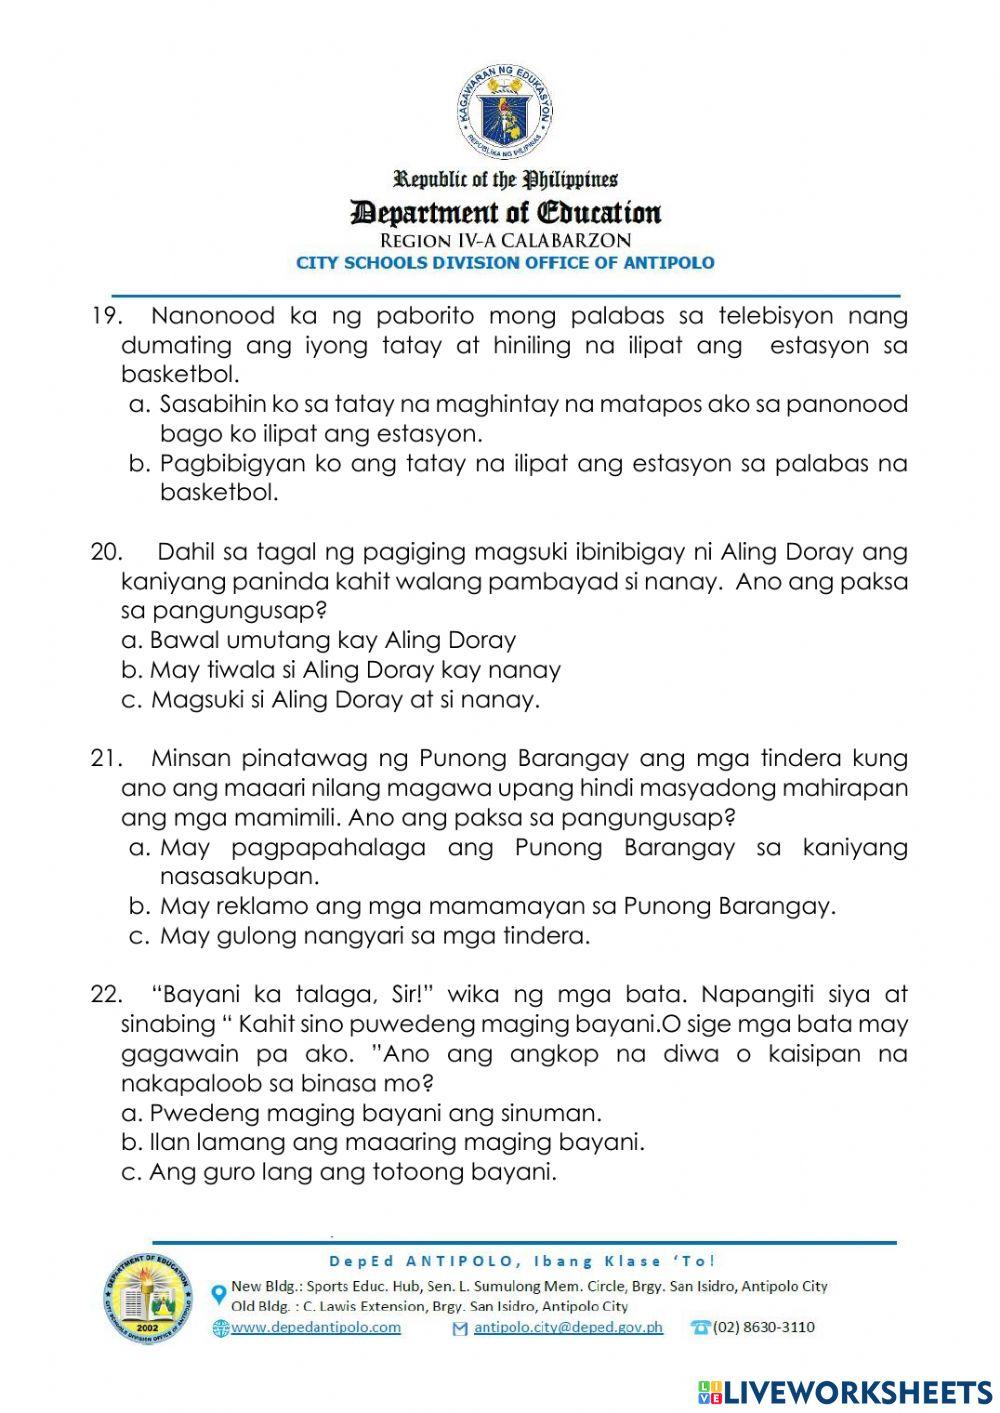 Diagnostic Test in Filipino 2